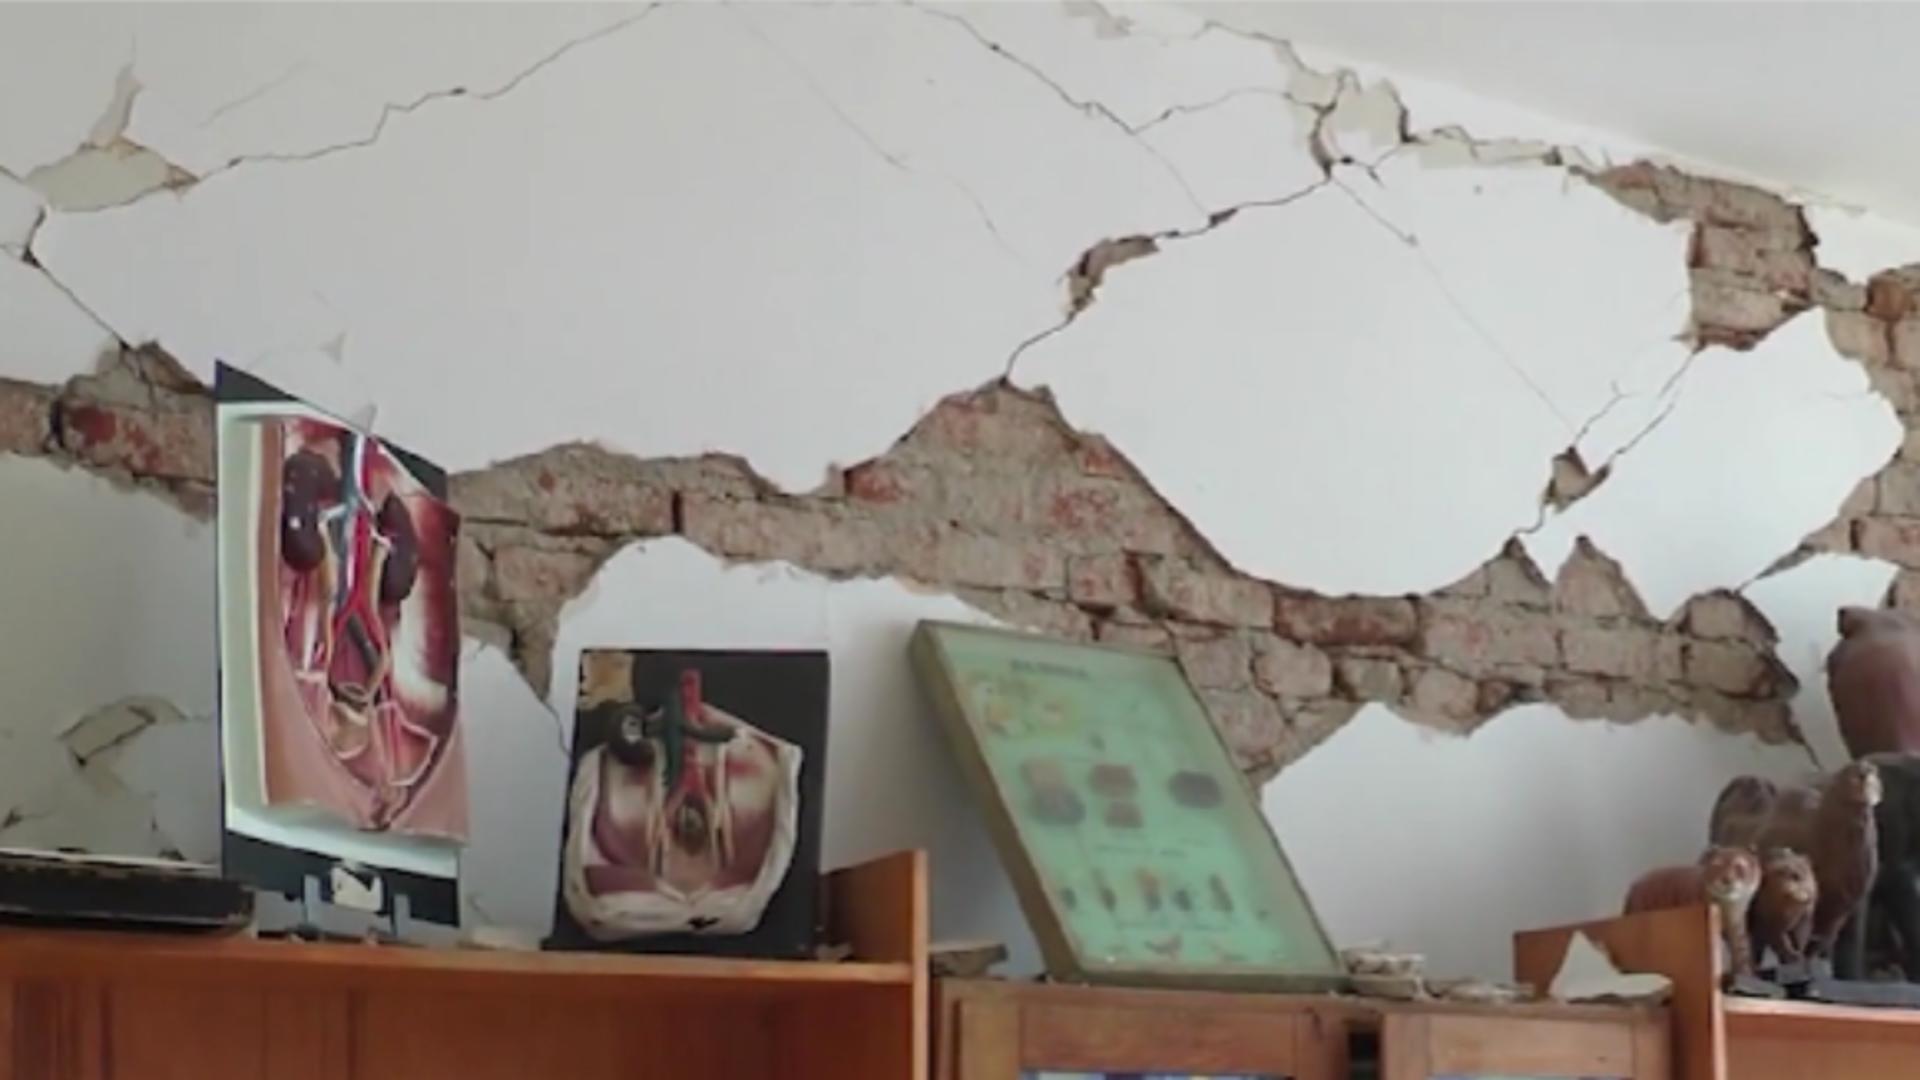 Perete școală afectat de cutremur/ Captură video